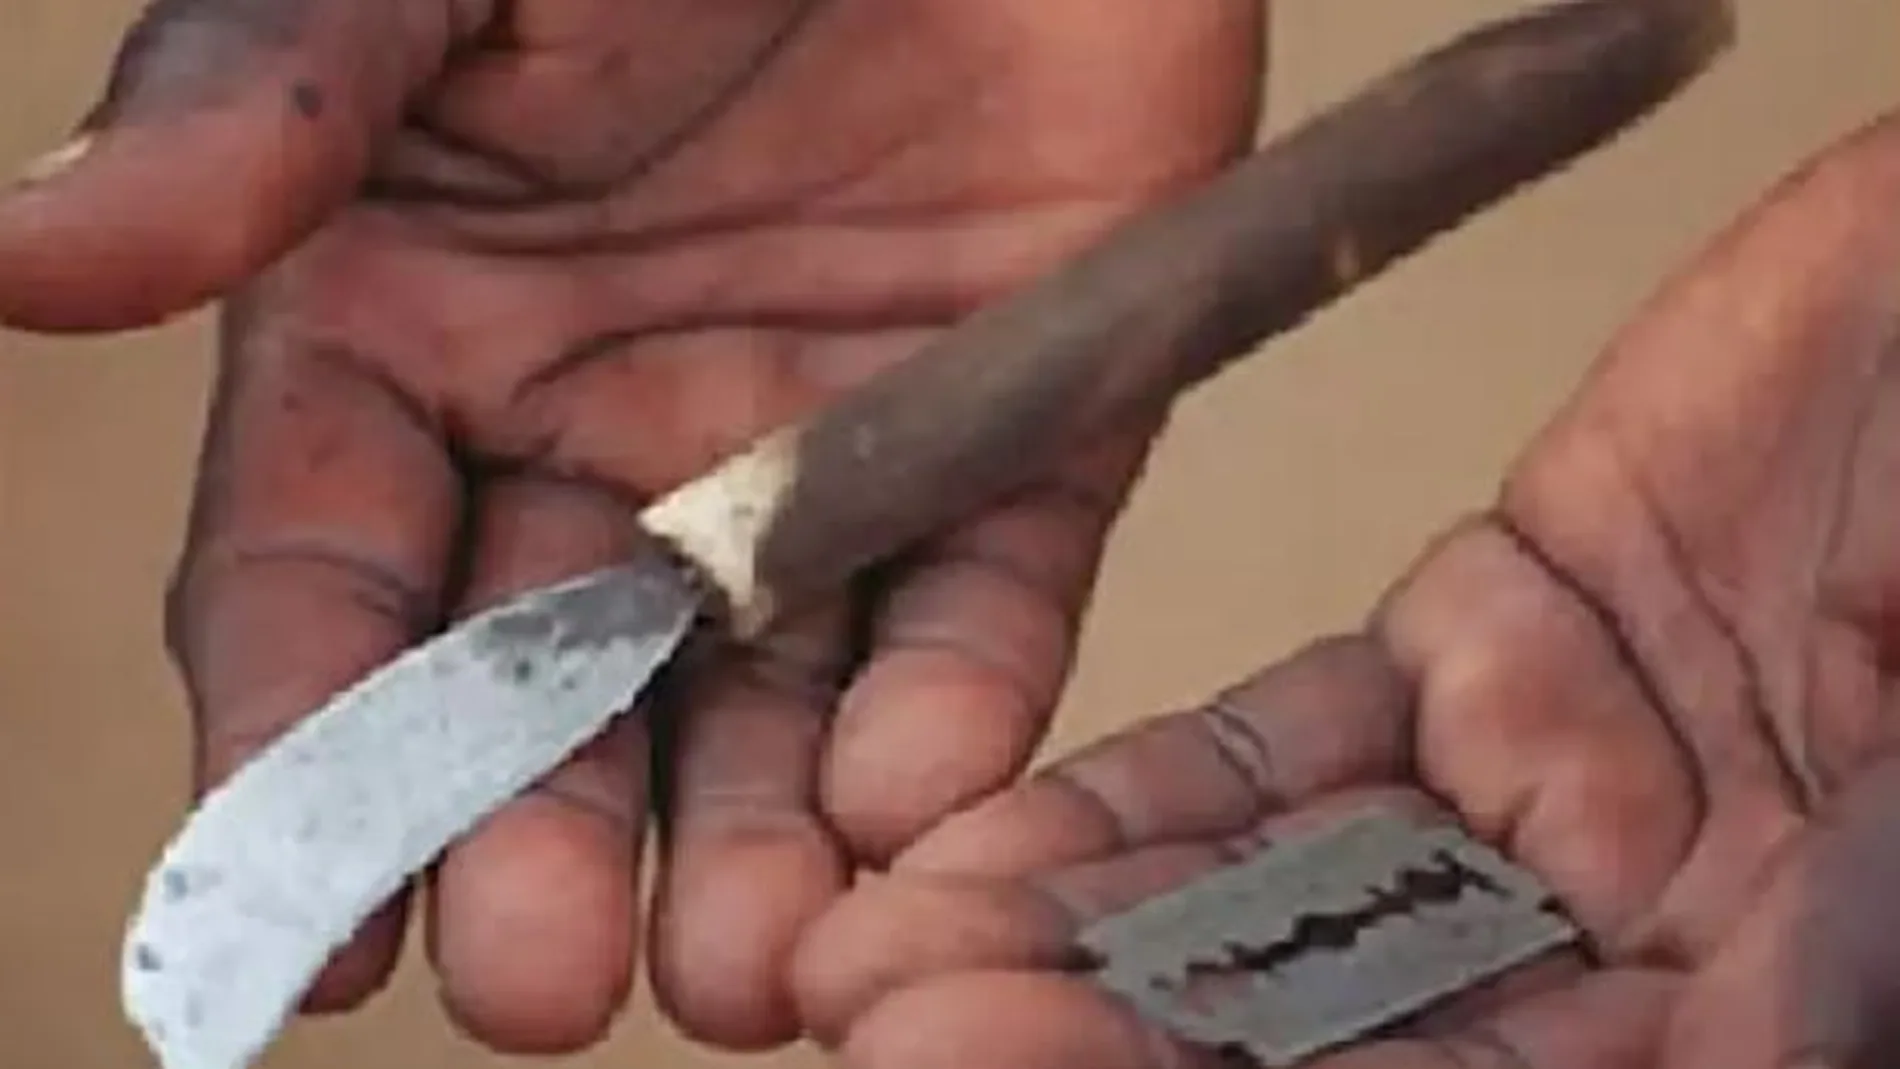 Herramientas usadas para una mutilación genital femenina (FGM).